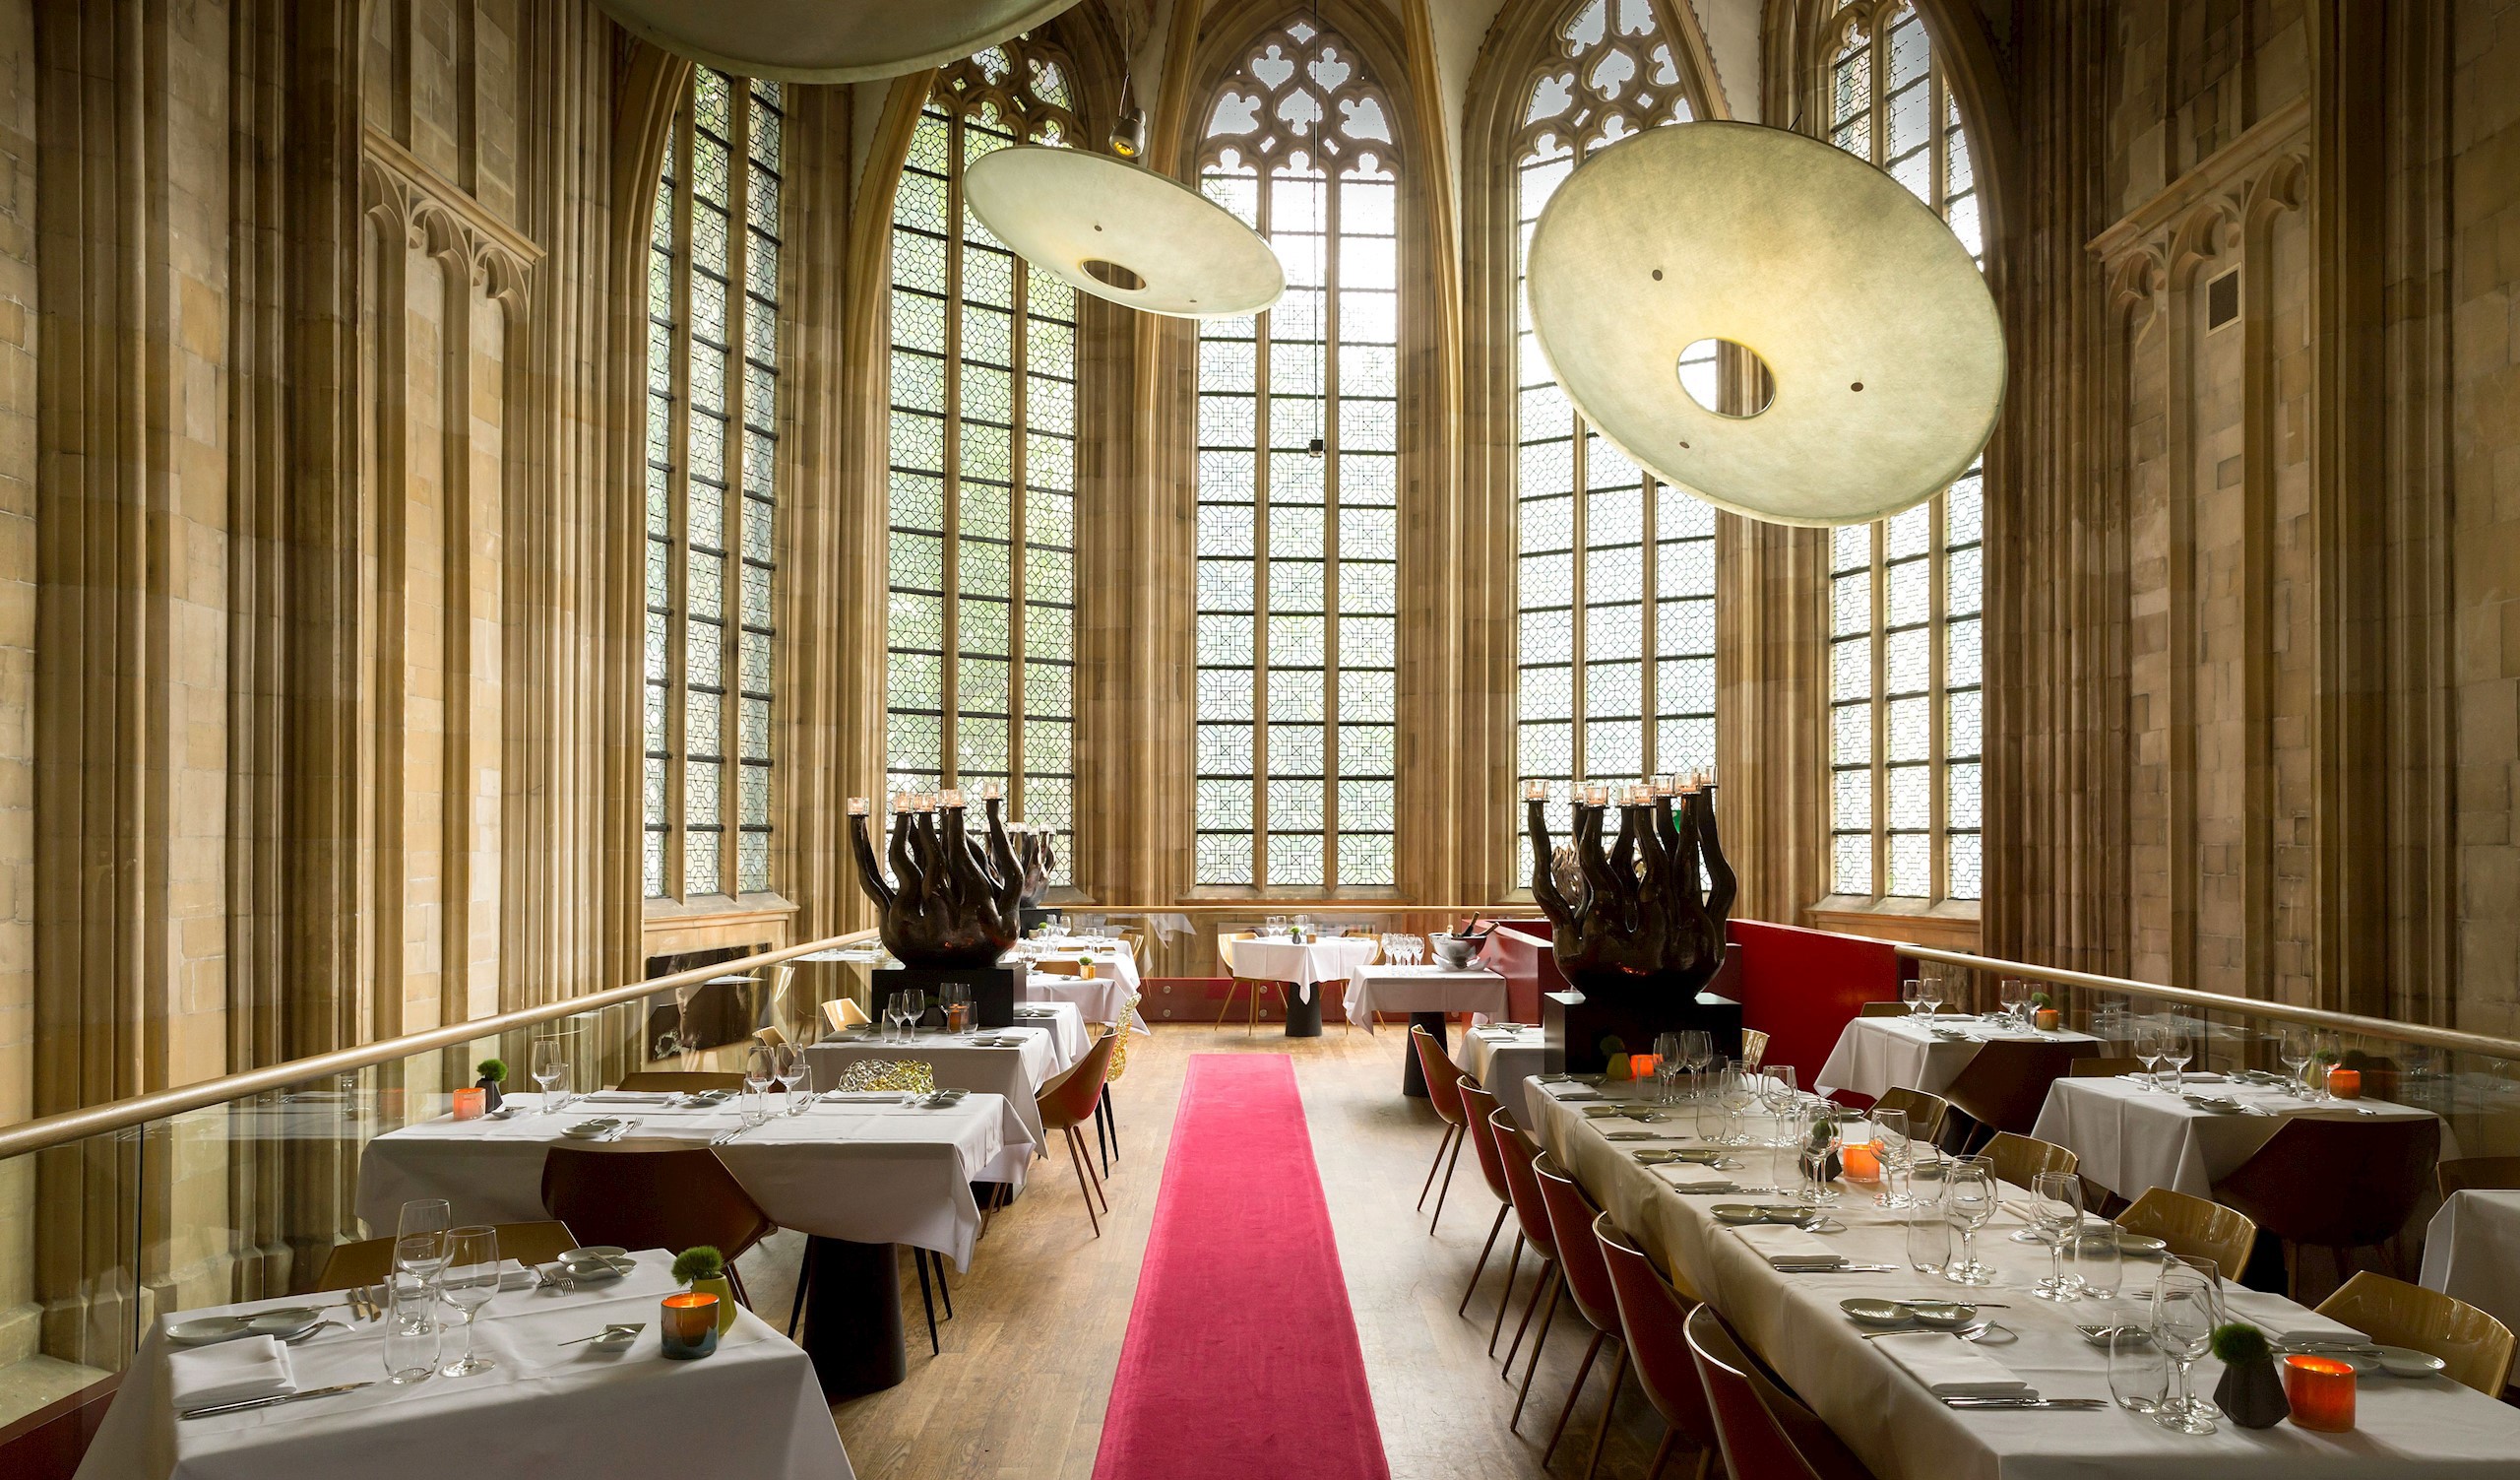 Kruisherenhotel Maastricht Restaurant Interior in Maastricht